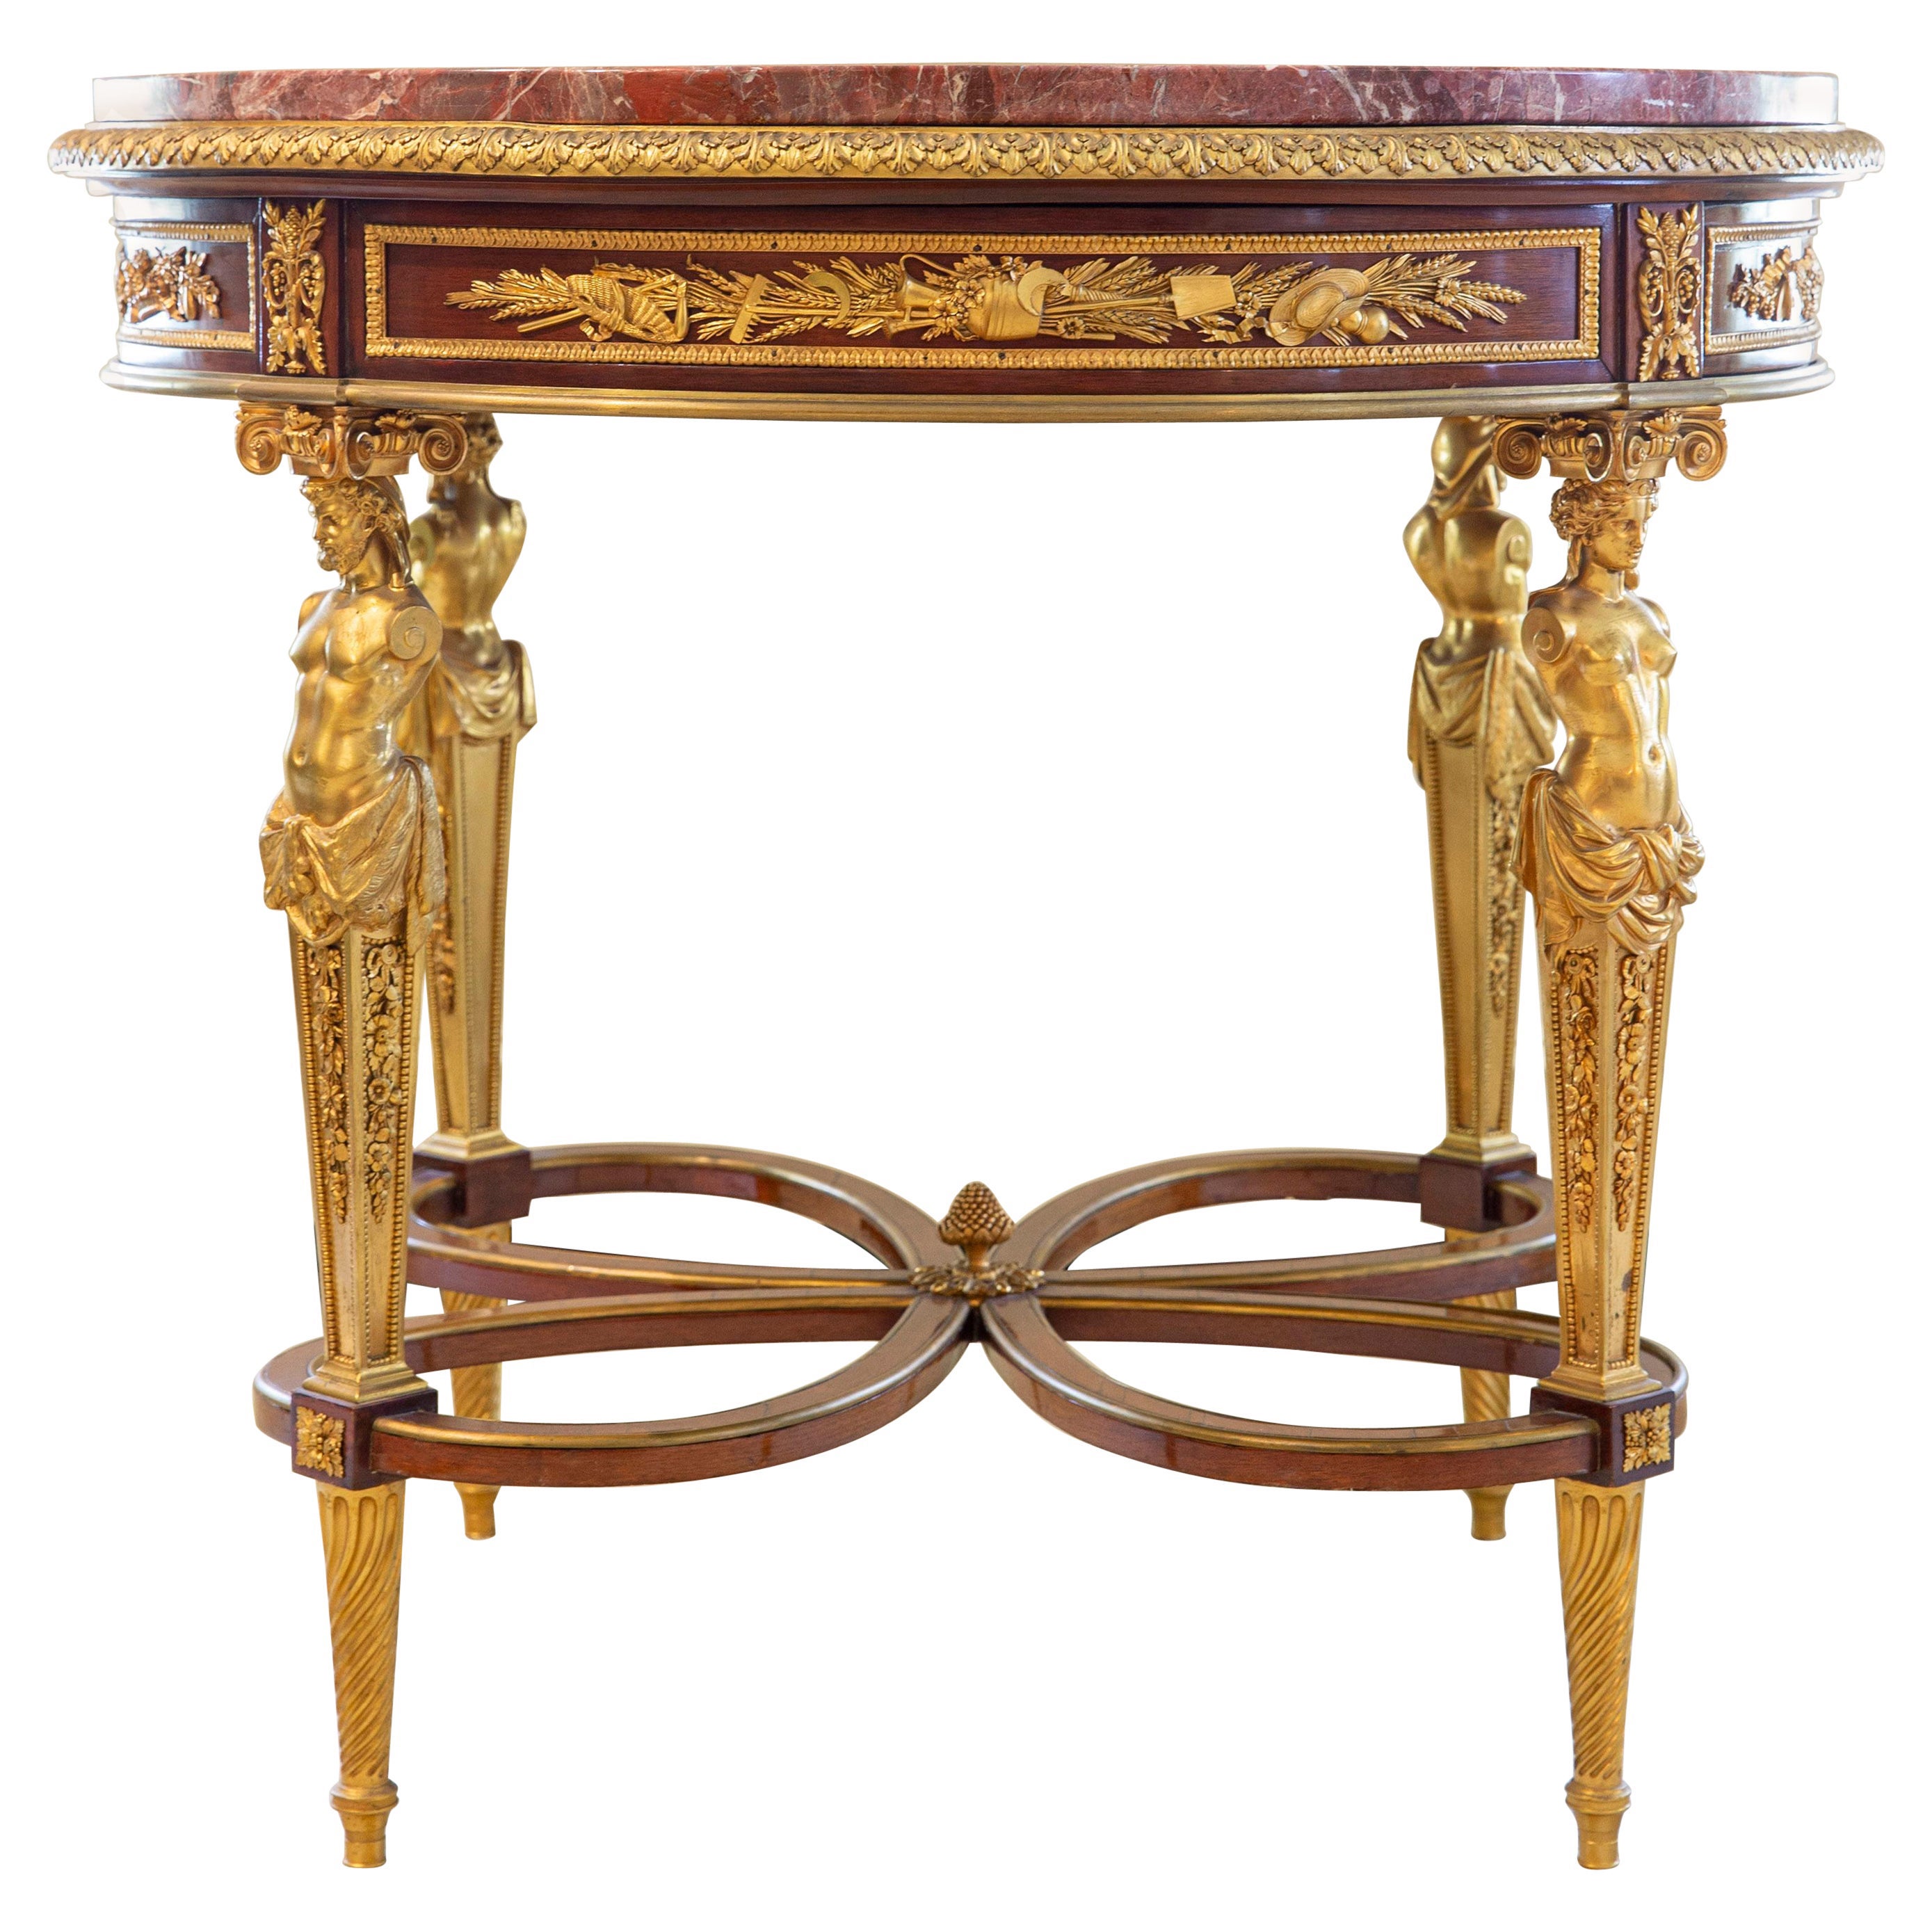 Ein sehr feiner vergoldeter Bronzetisch von Henry Dasson aus dem späten 19. Jahrhundert